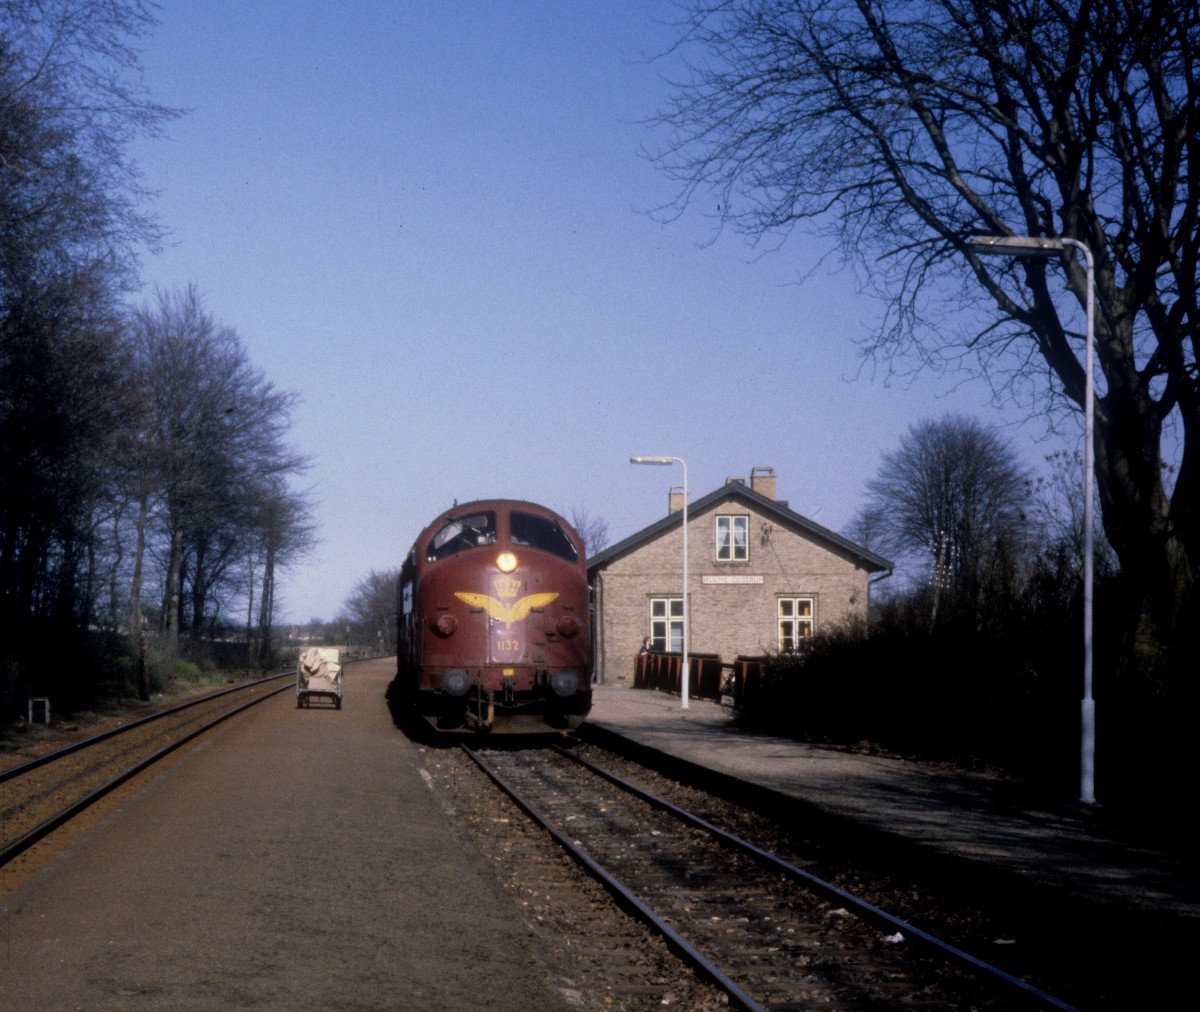 DSB-Kleinstadtbahnhöfe: Bahnhof Holme-Olstrup. - Am 14. April 1981 hält ein Regionalzug (My 1132) in Holme-Olstrup. Der Zug fährt in Richtung Næstved. 